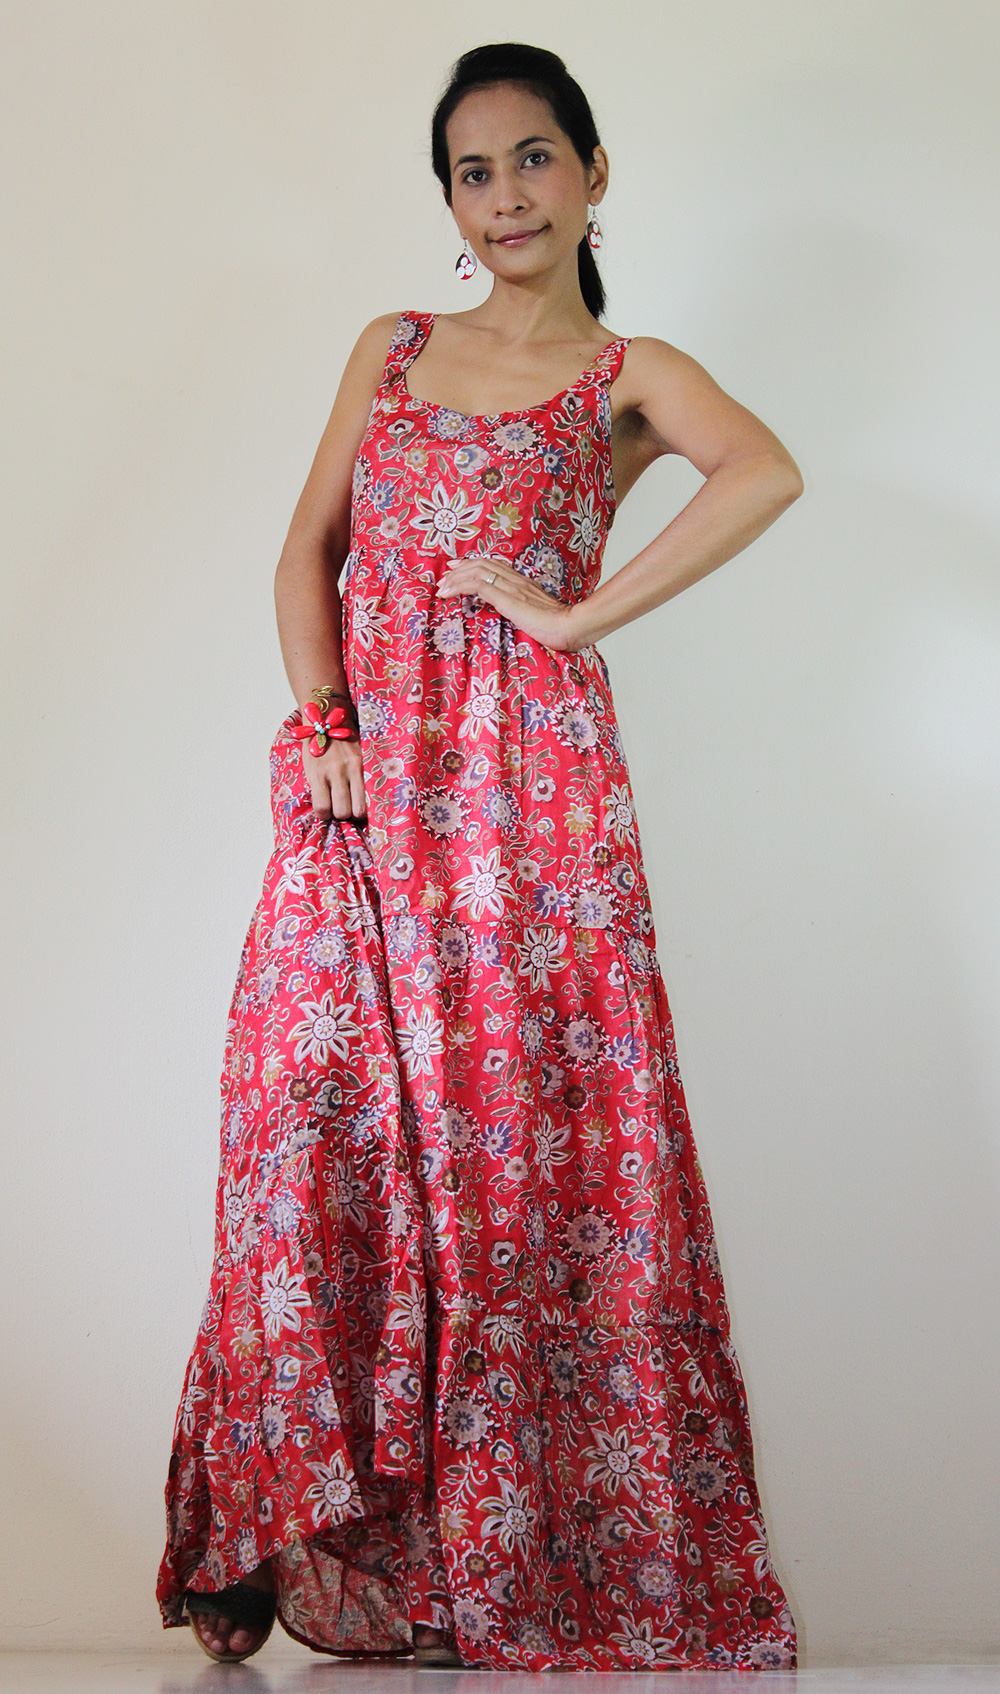 Red Maxi Dress Bohemian Sleeveless Flower Print Long Dress : Hippie ...